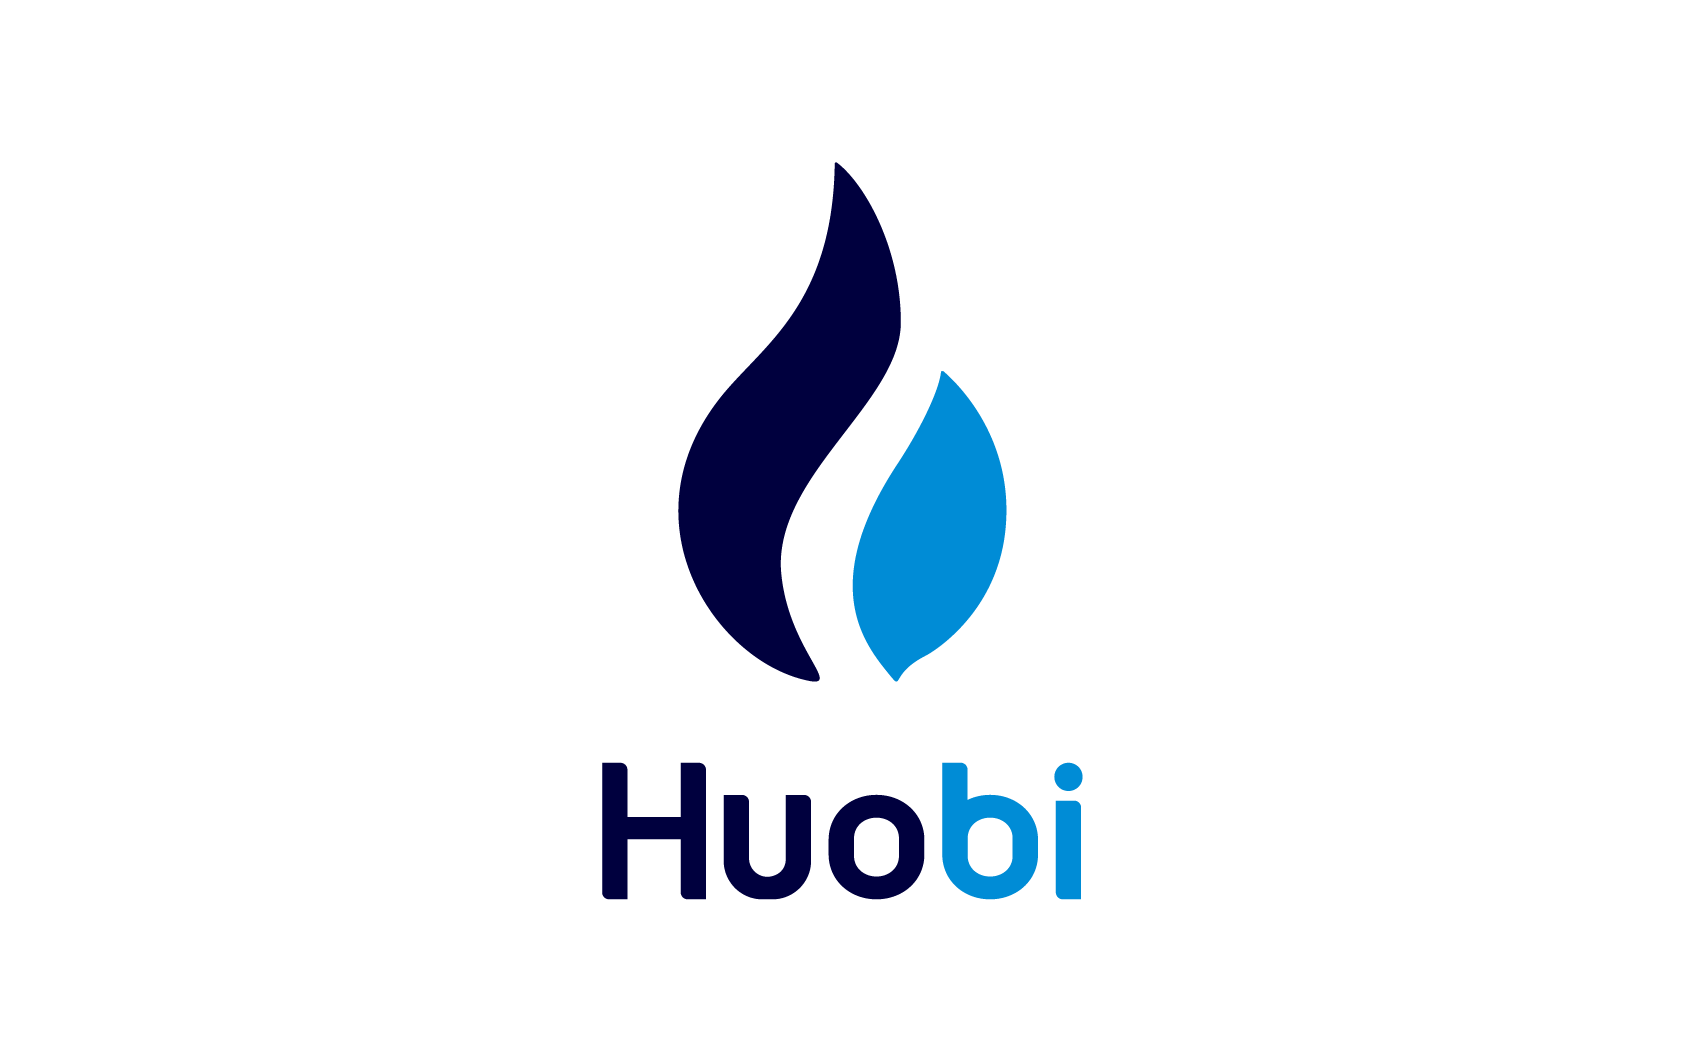 Bank-_Huobi-logo-square-.webp